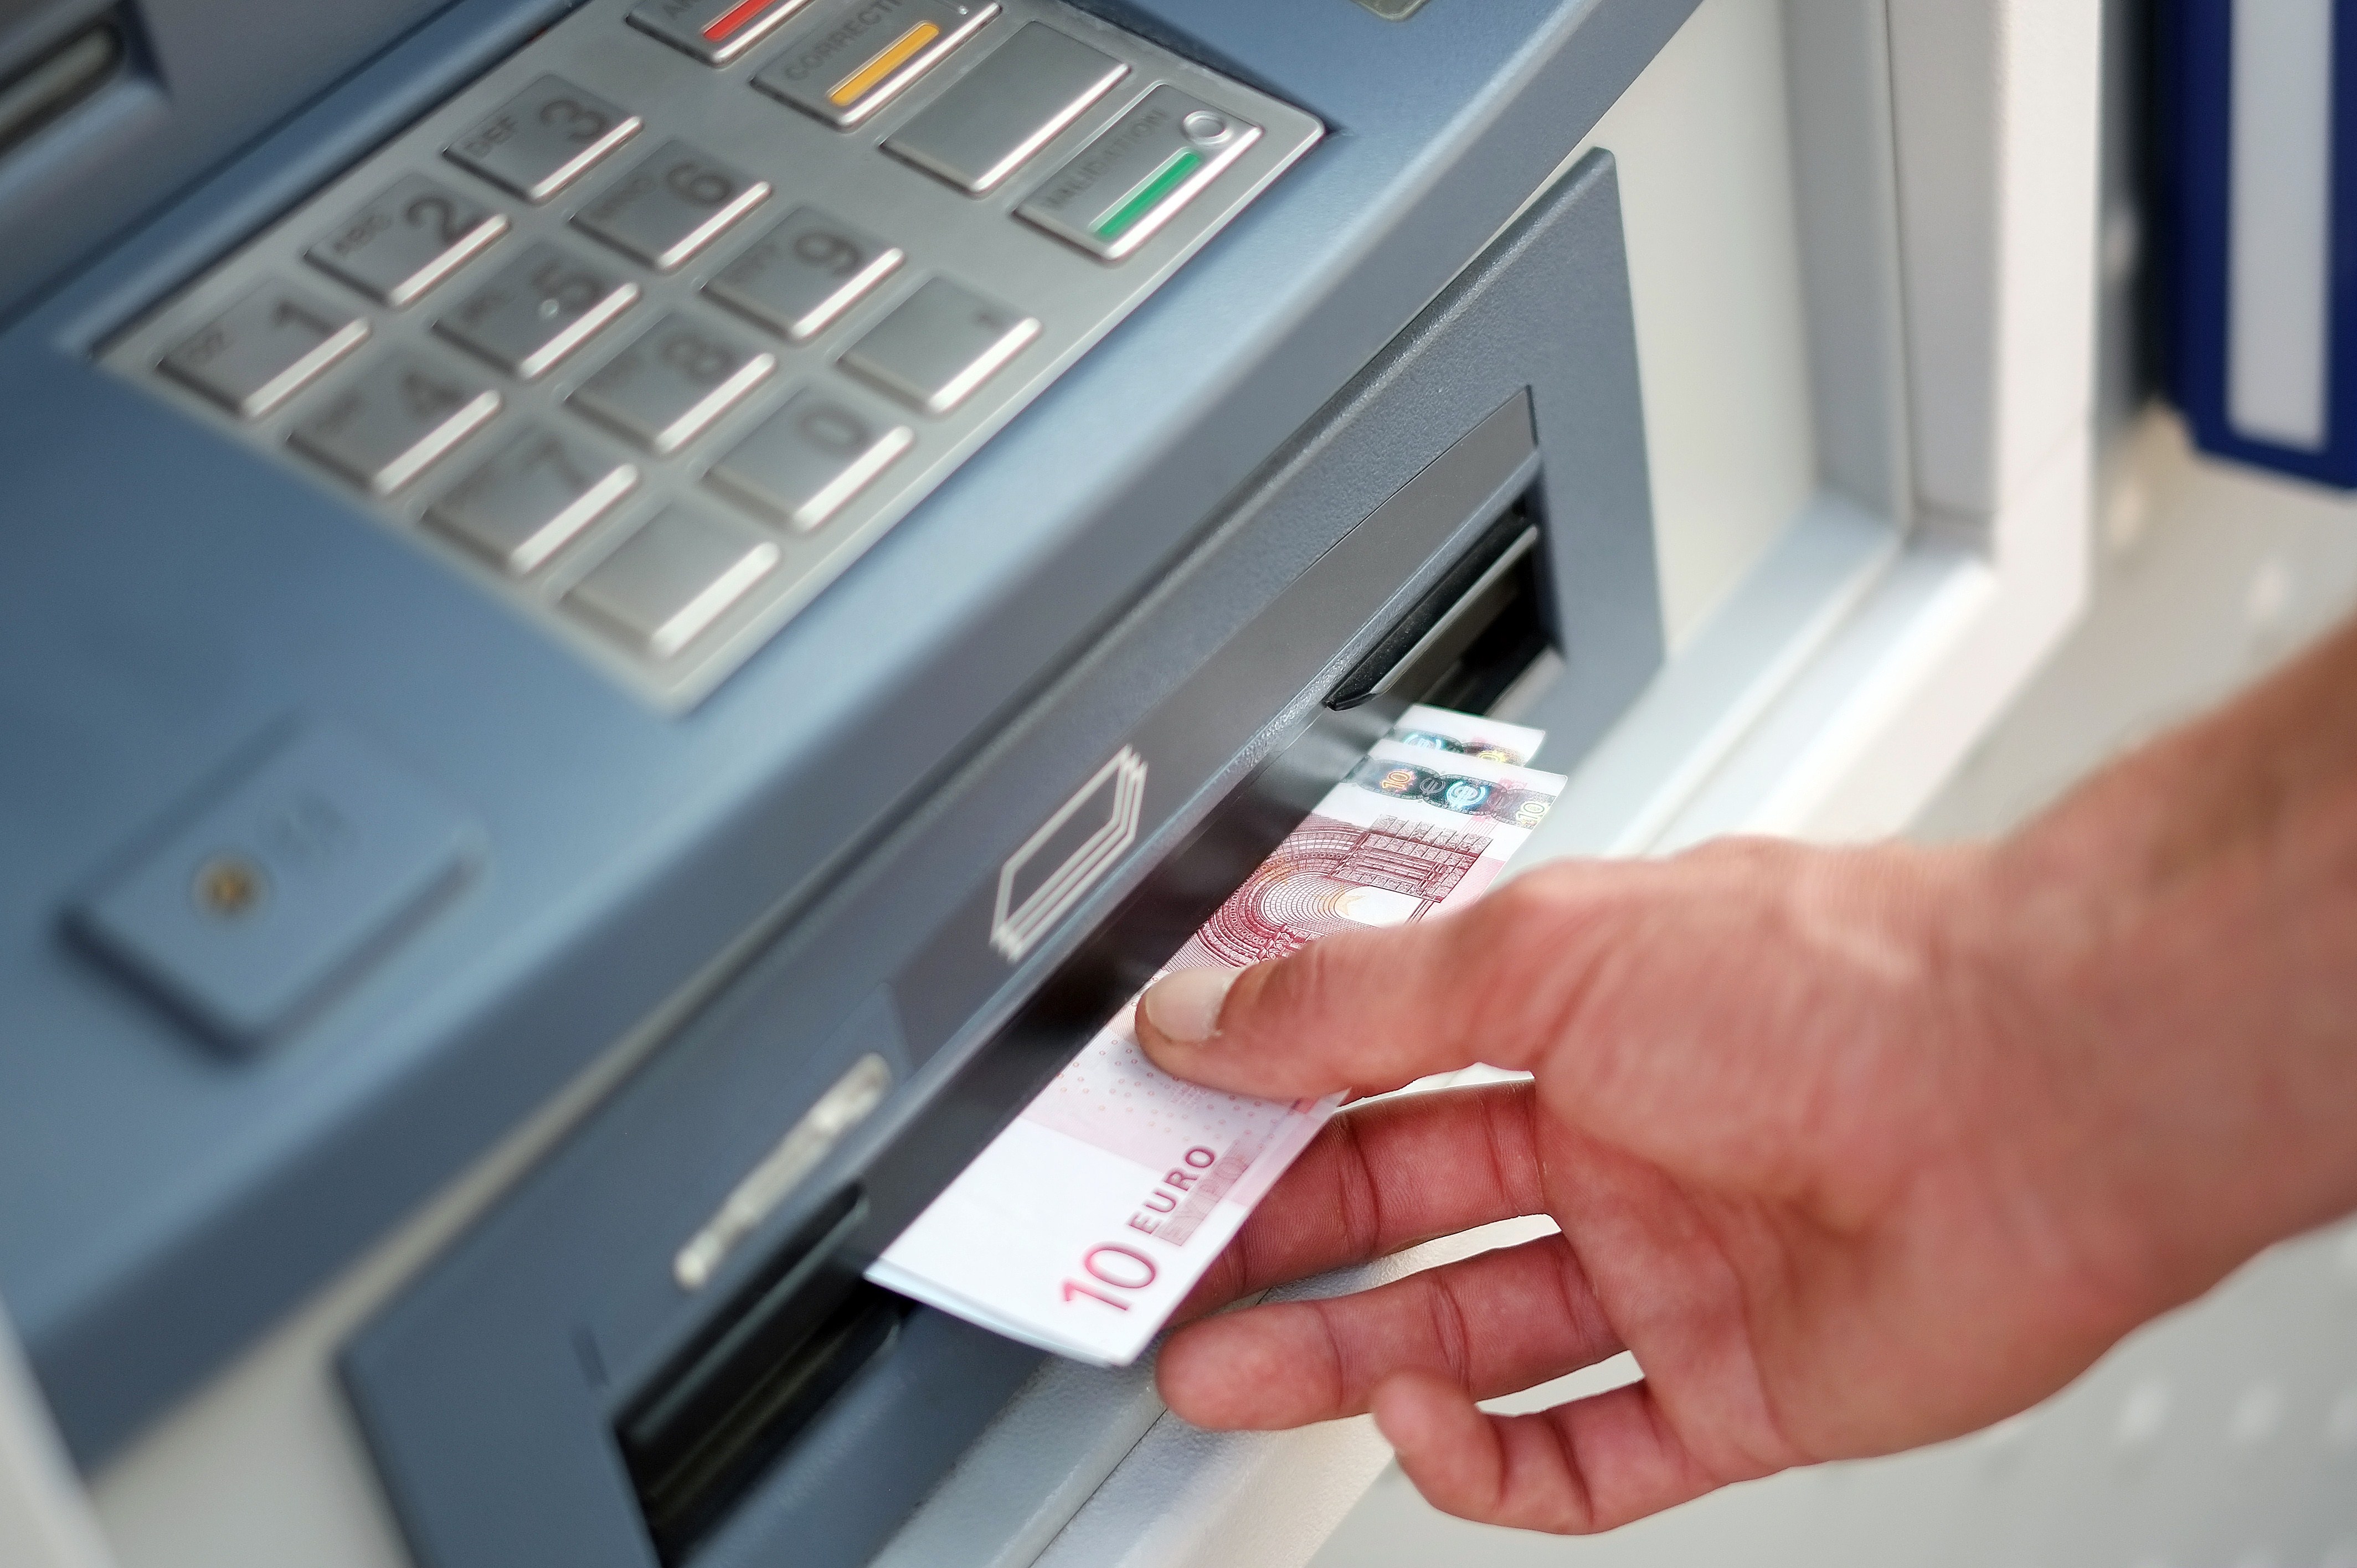 Bande mutmaßlicher Geldautomatenknacker zerschlagen – 600.000 Euro Bargeld erbeutet